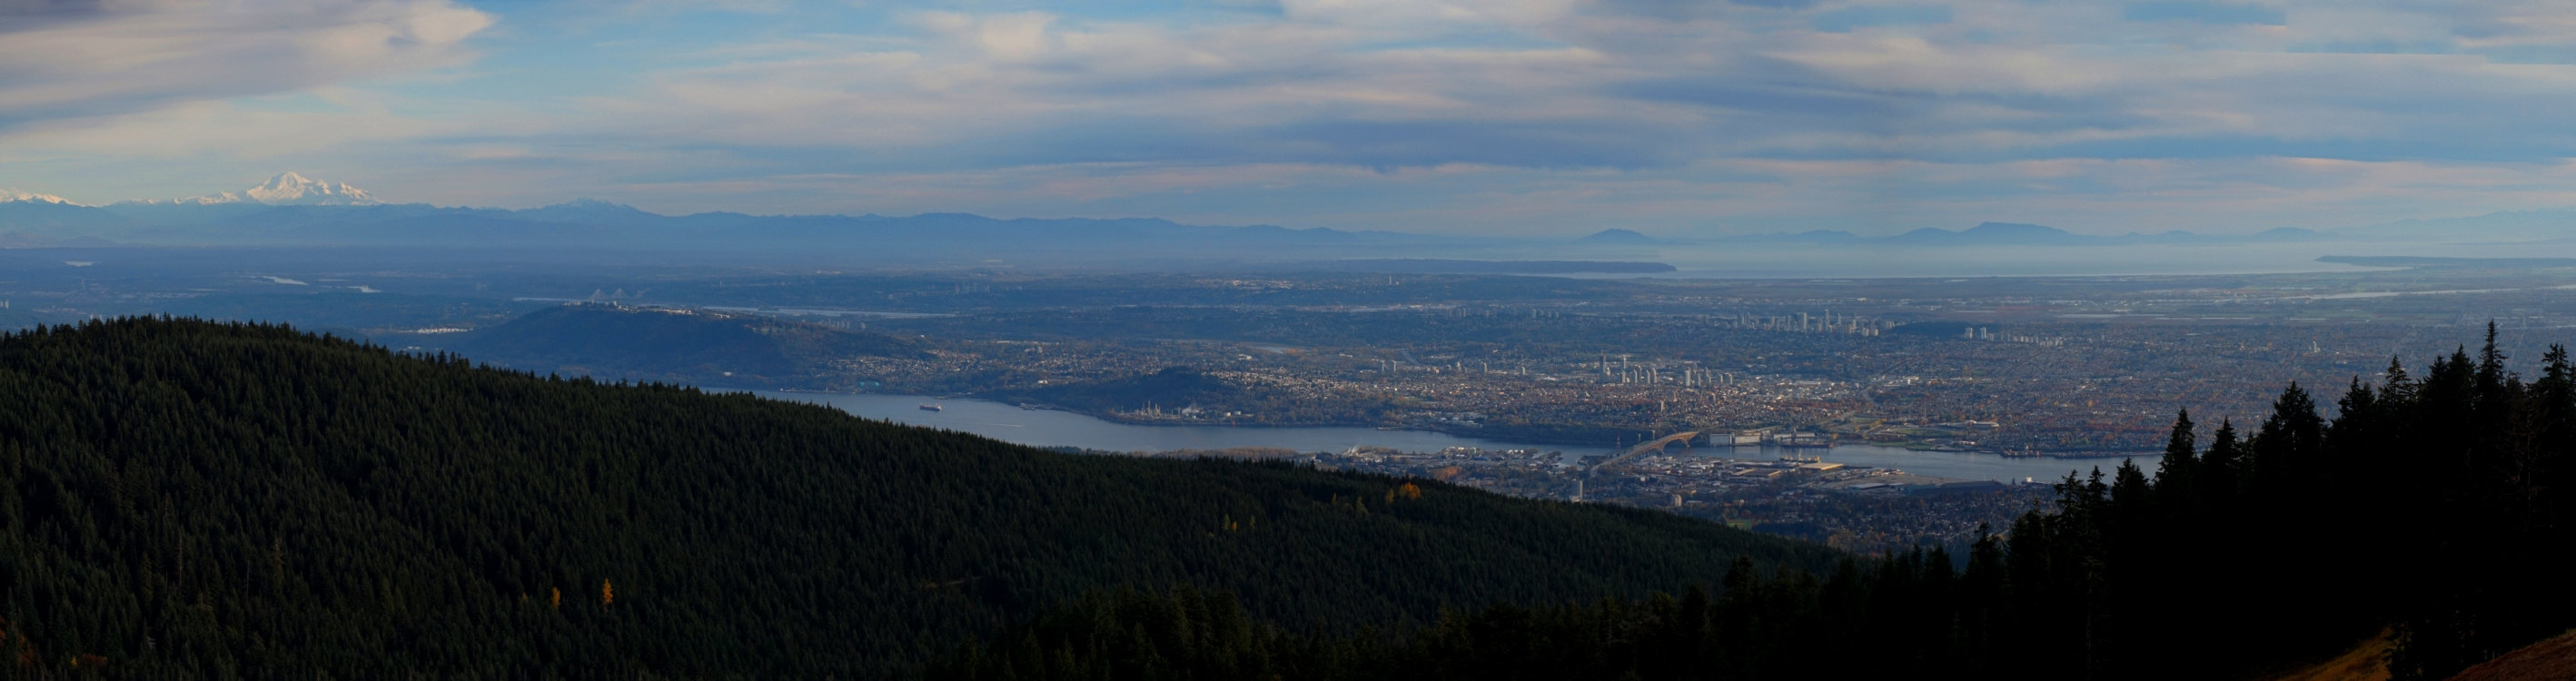 Blick vom Grouse Mountain über Vancouver und das Fraser Valley.